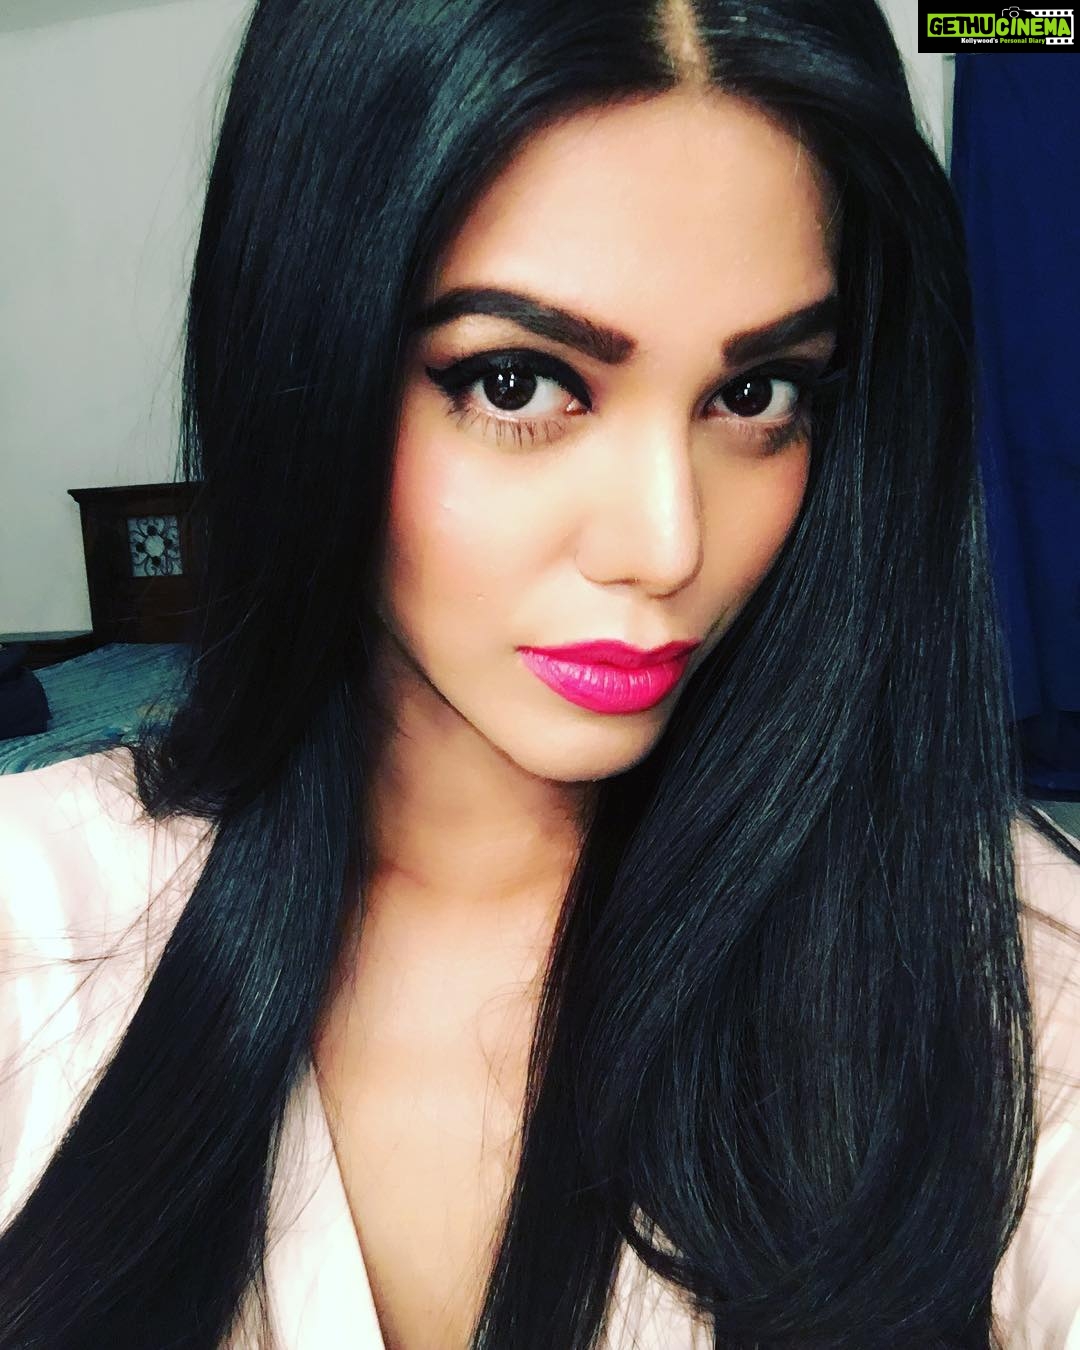 Actress Natasha Suri Instagram Photos and Posts - July 2017 Part 1 ...